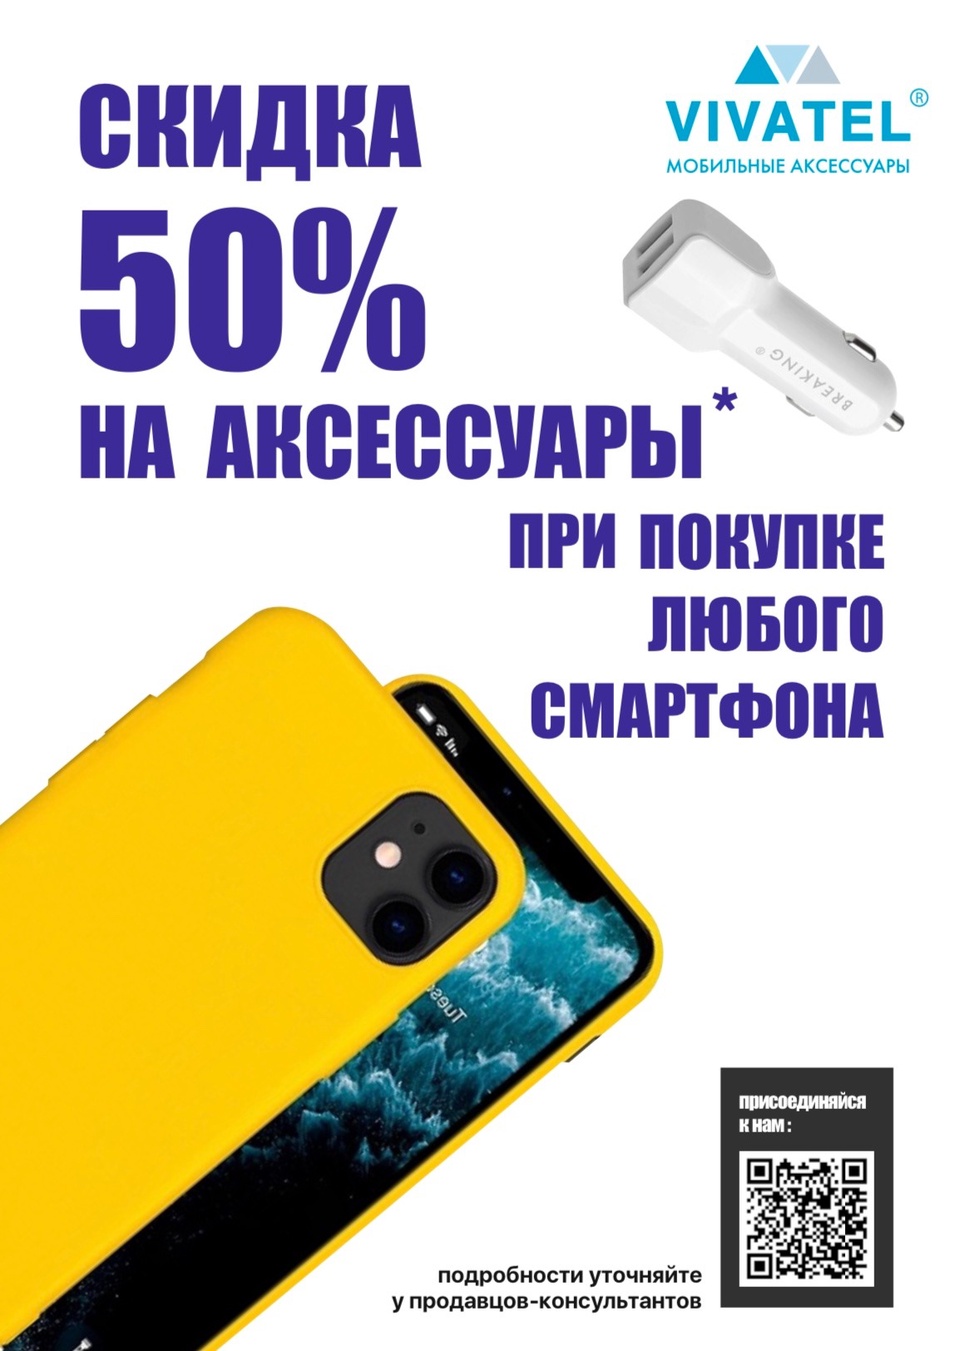 Скидка 50% на аксессуары при покупке смартфона — Vivatel, Пятигорск